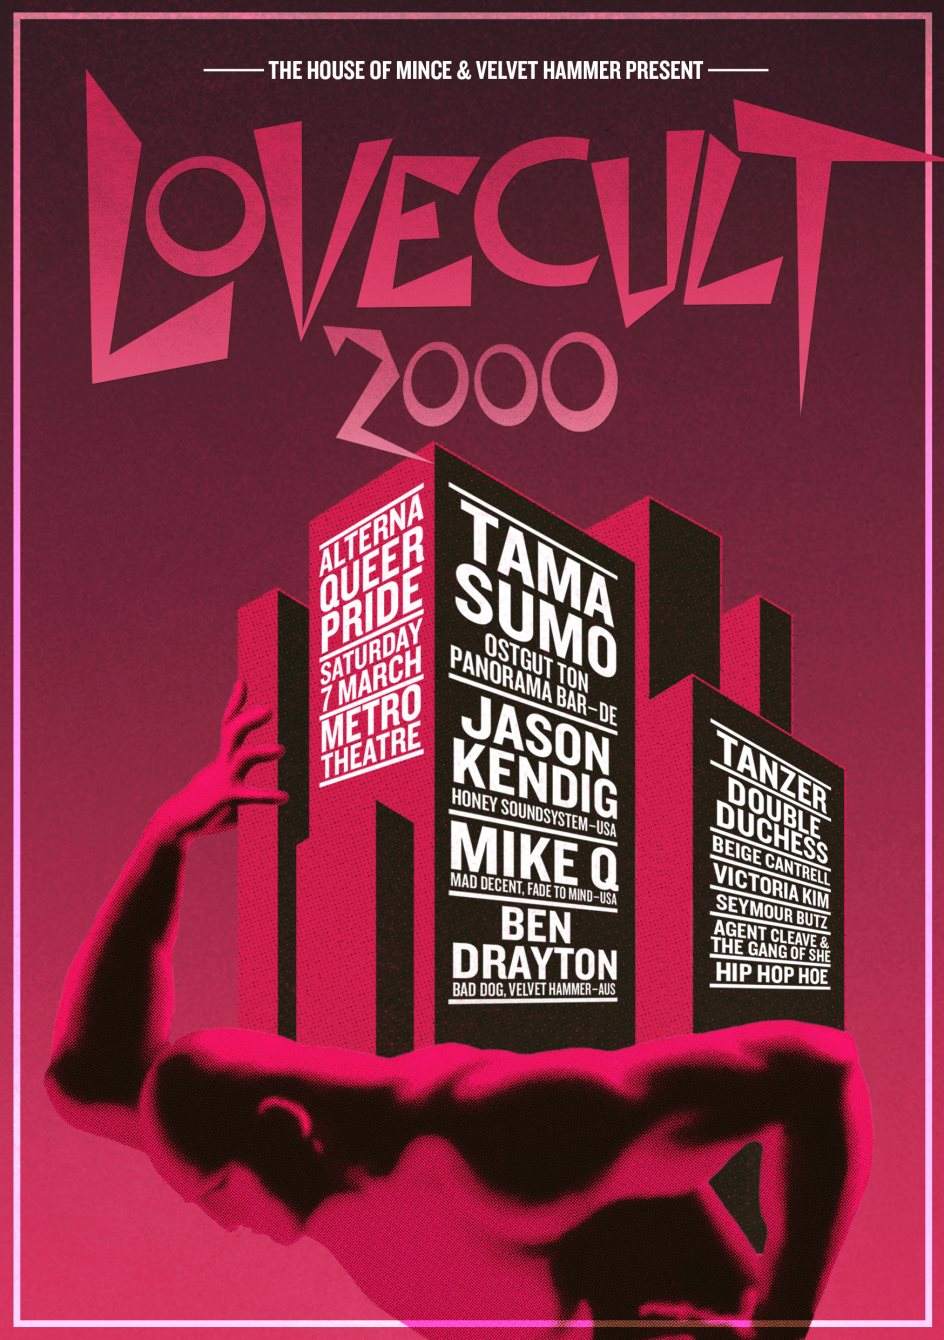 Lovecult 2000 - Página frontal